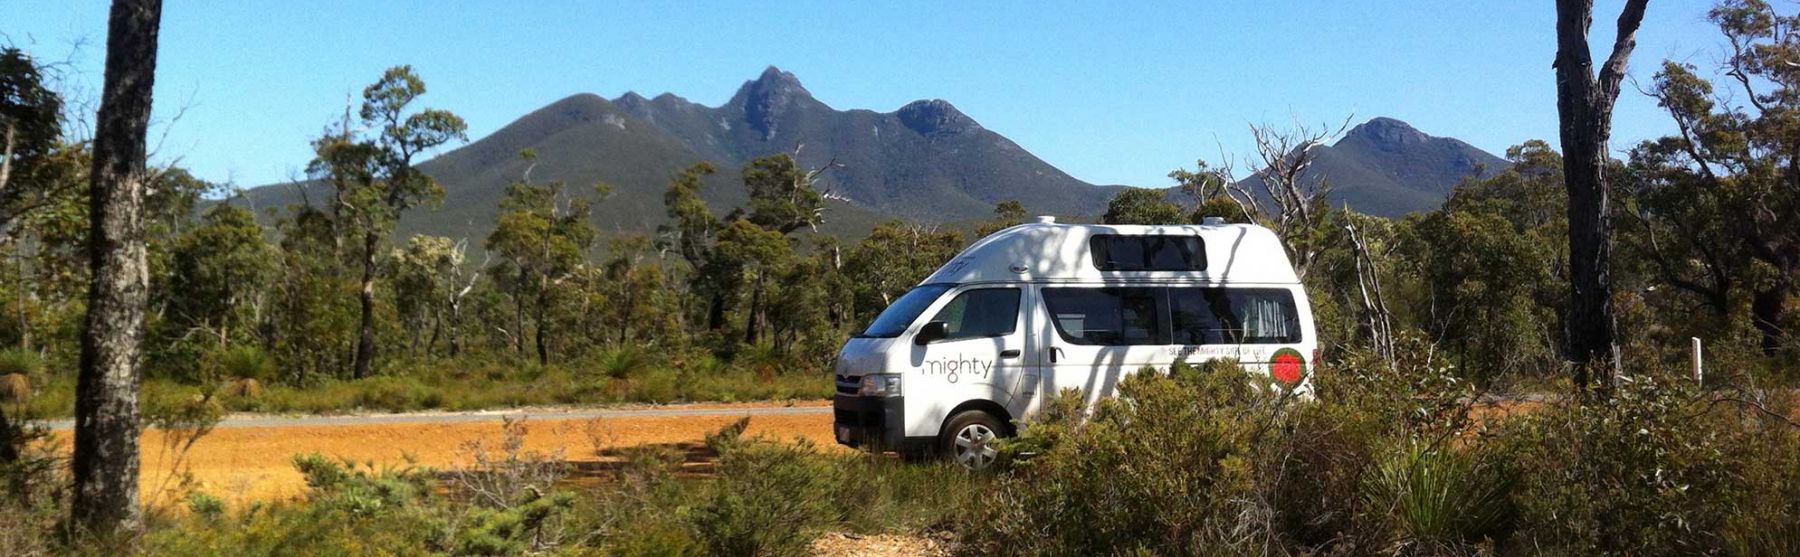 Camper van used as research vehicle in Western Australia.